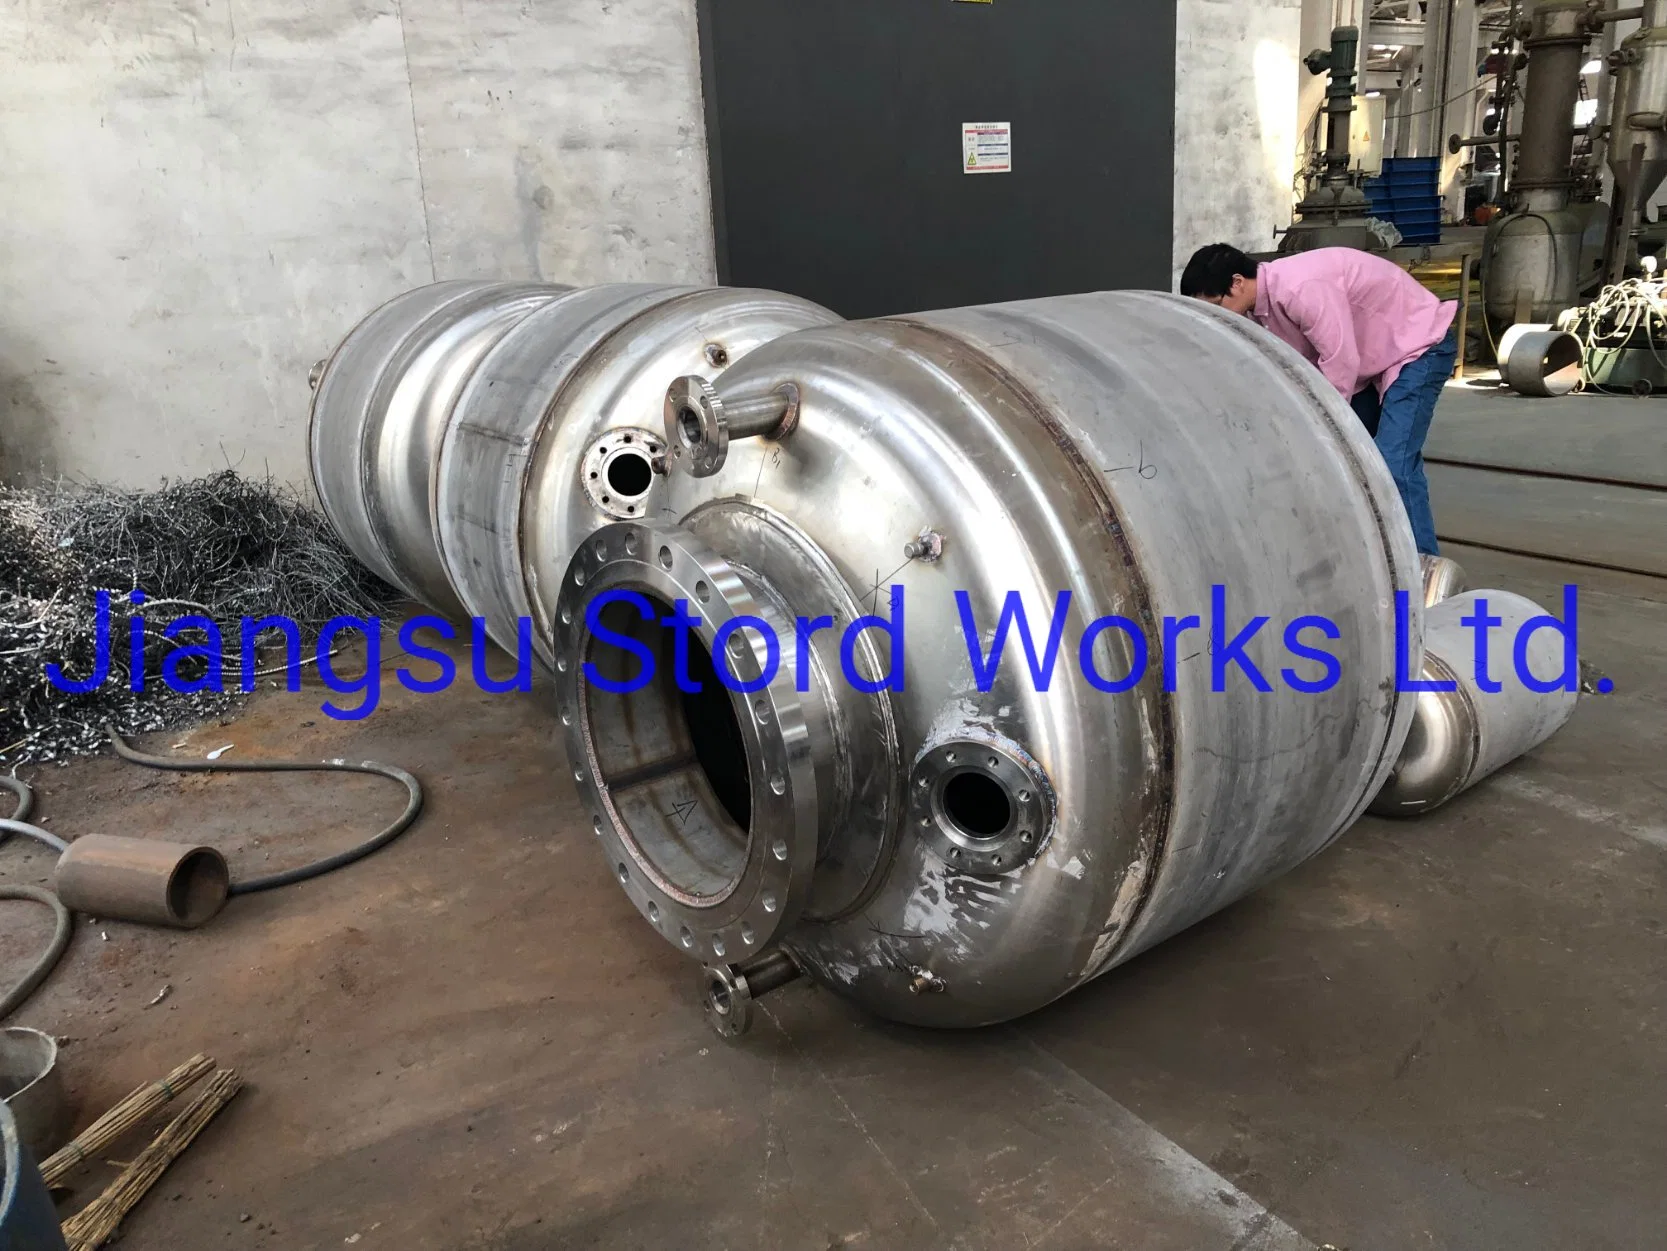 Stordworks Low Pressure Storage Tank Stainless Steel Vessel